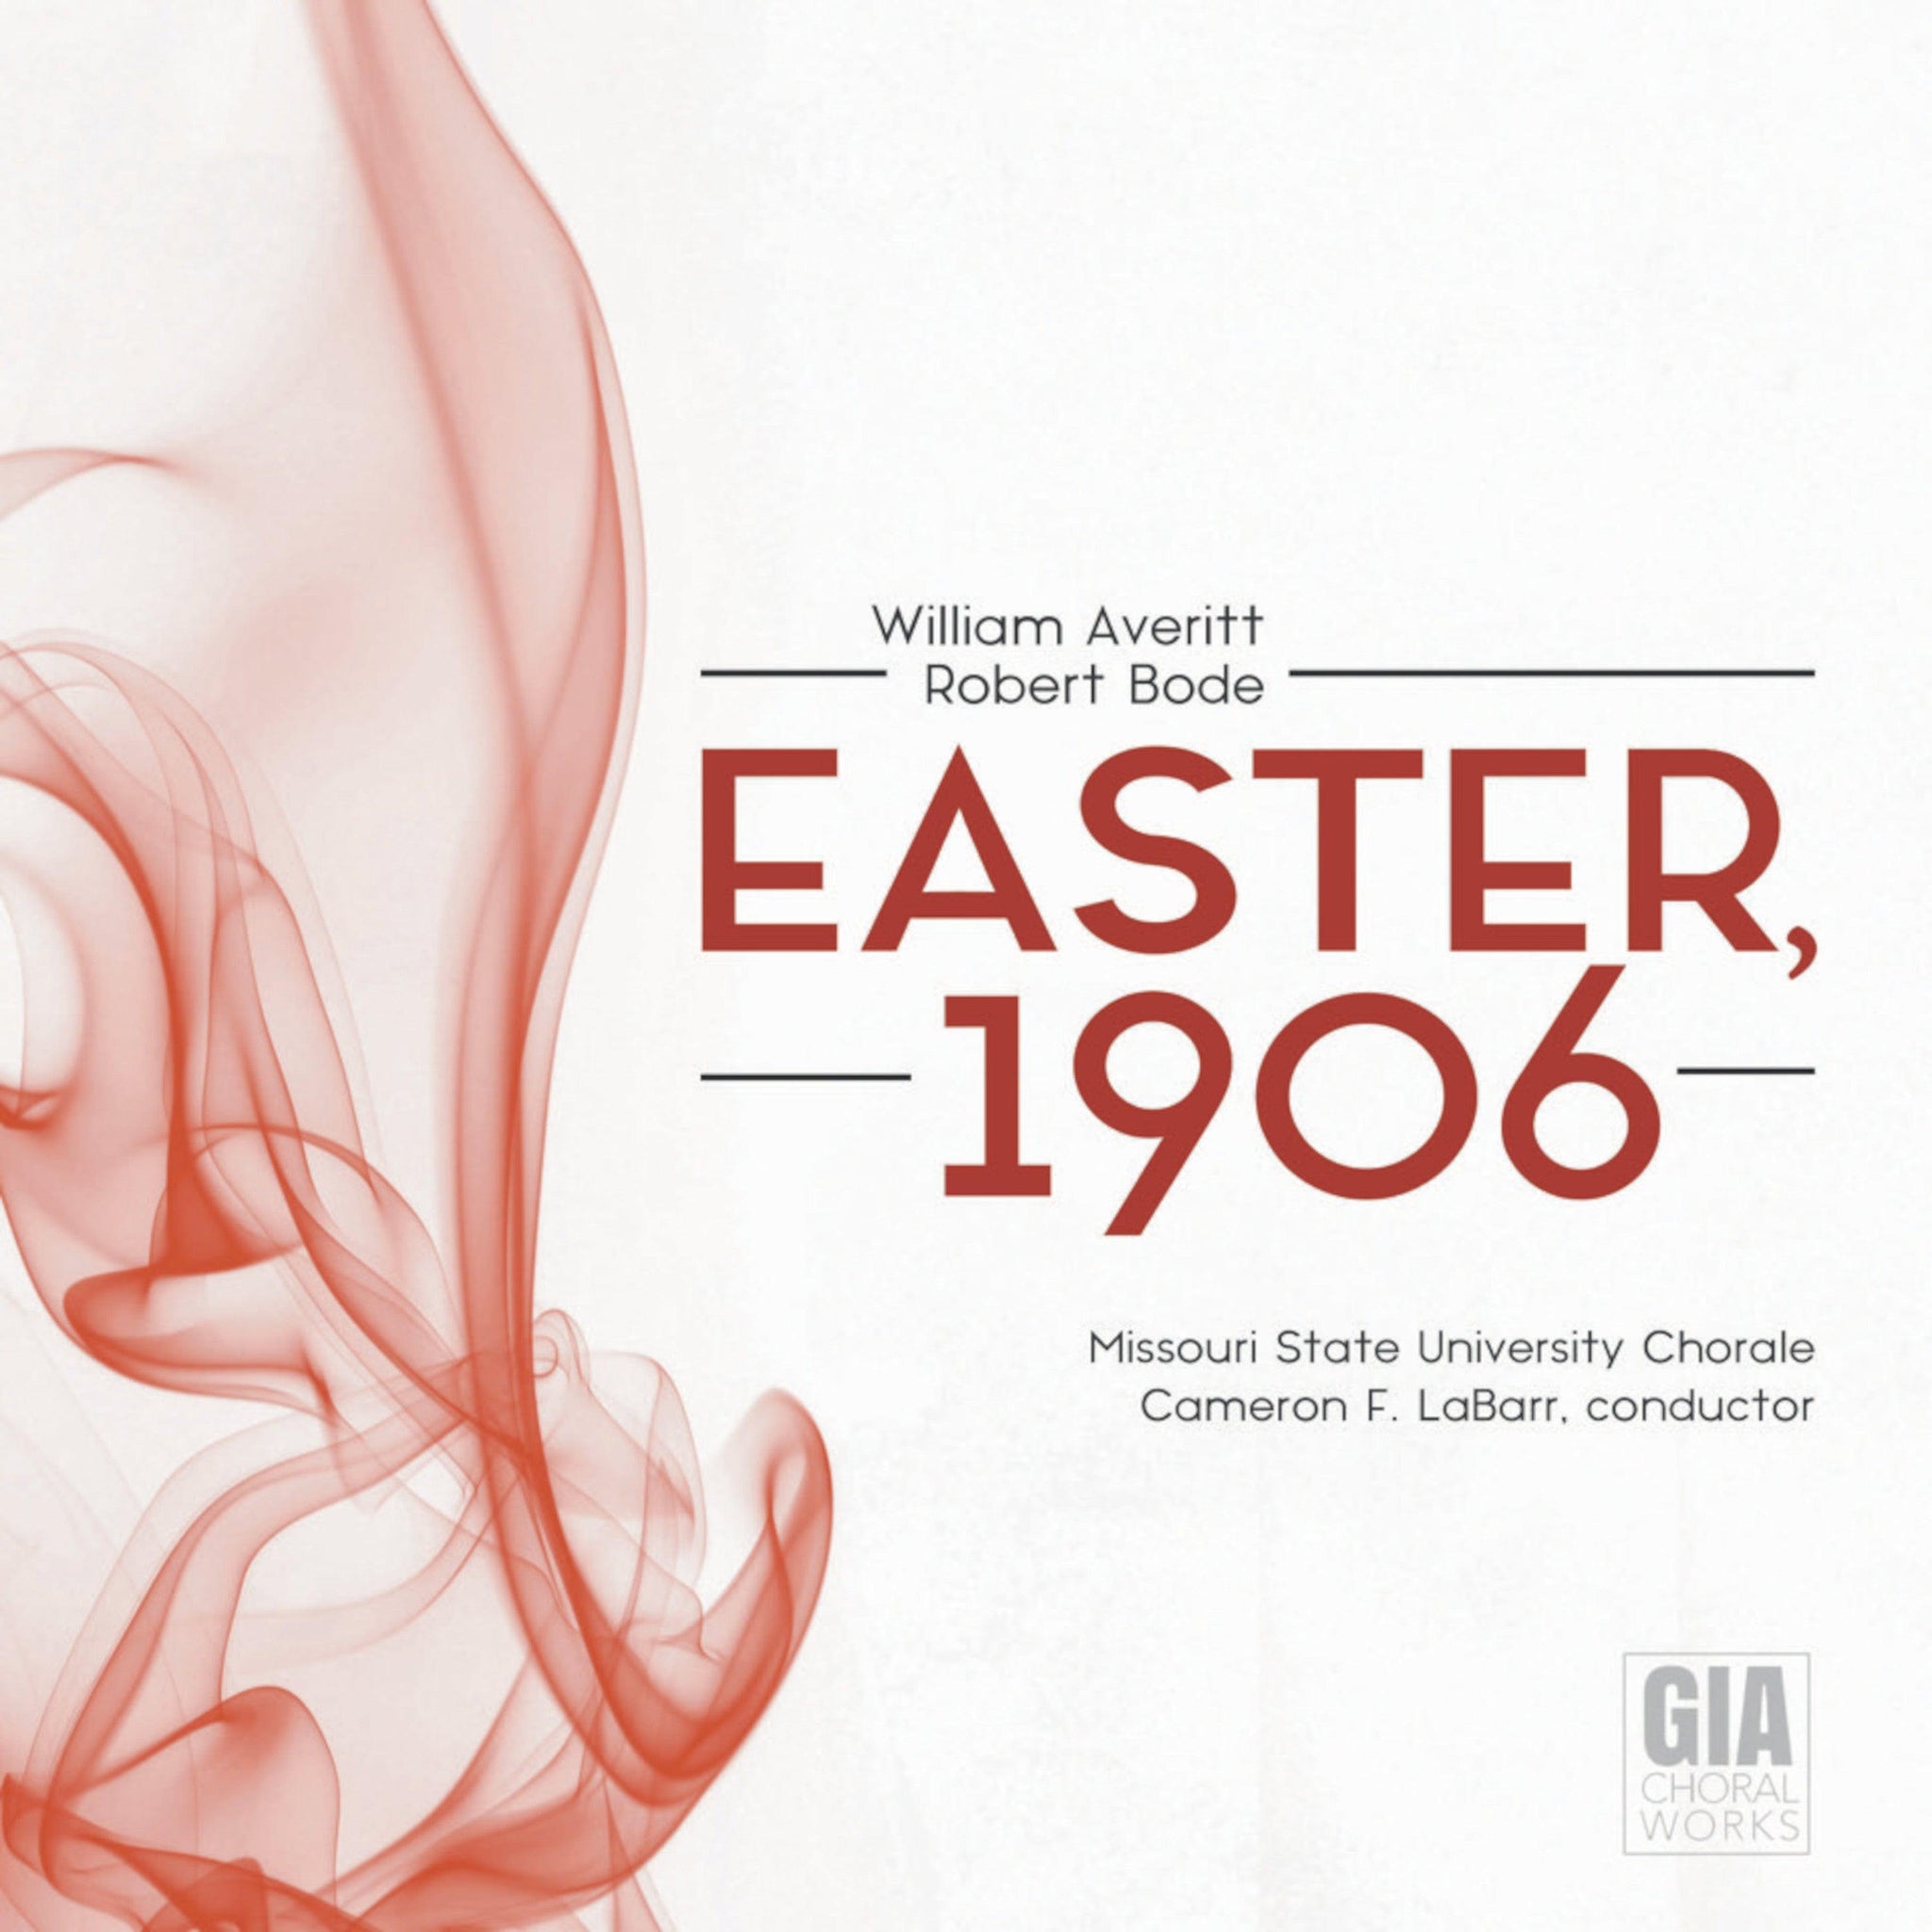 Averitt: Easter, 1906 / LaBarr, Missouri State University Chorale - ArkivMusic